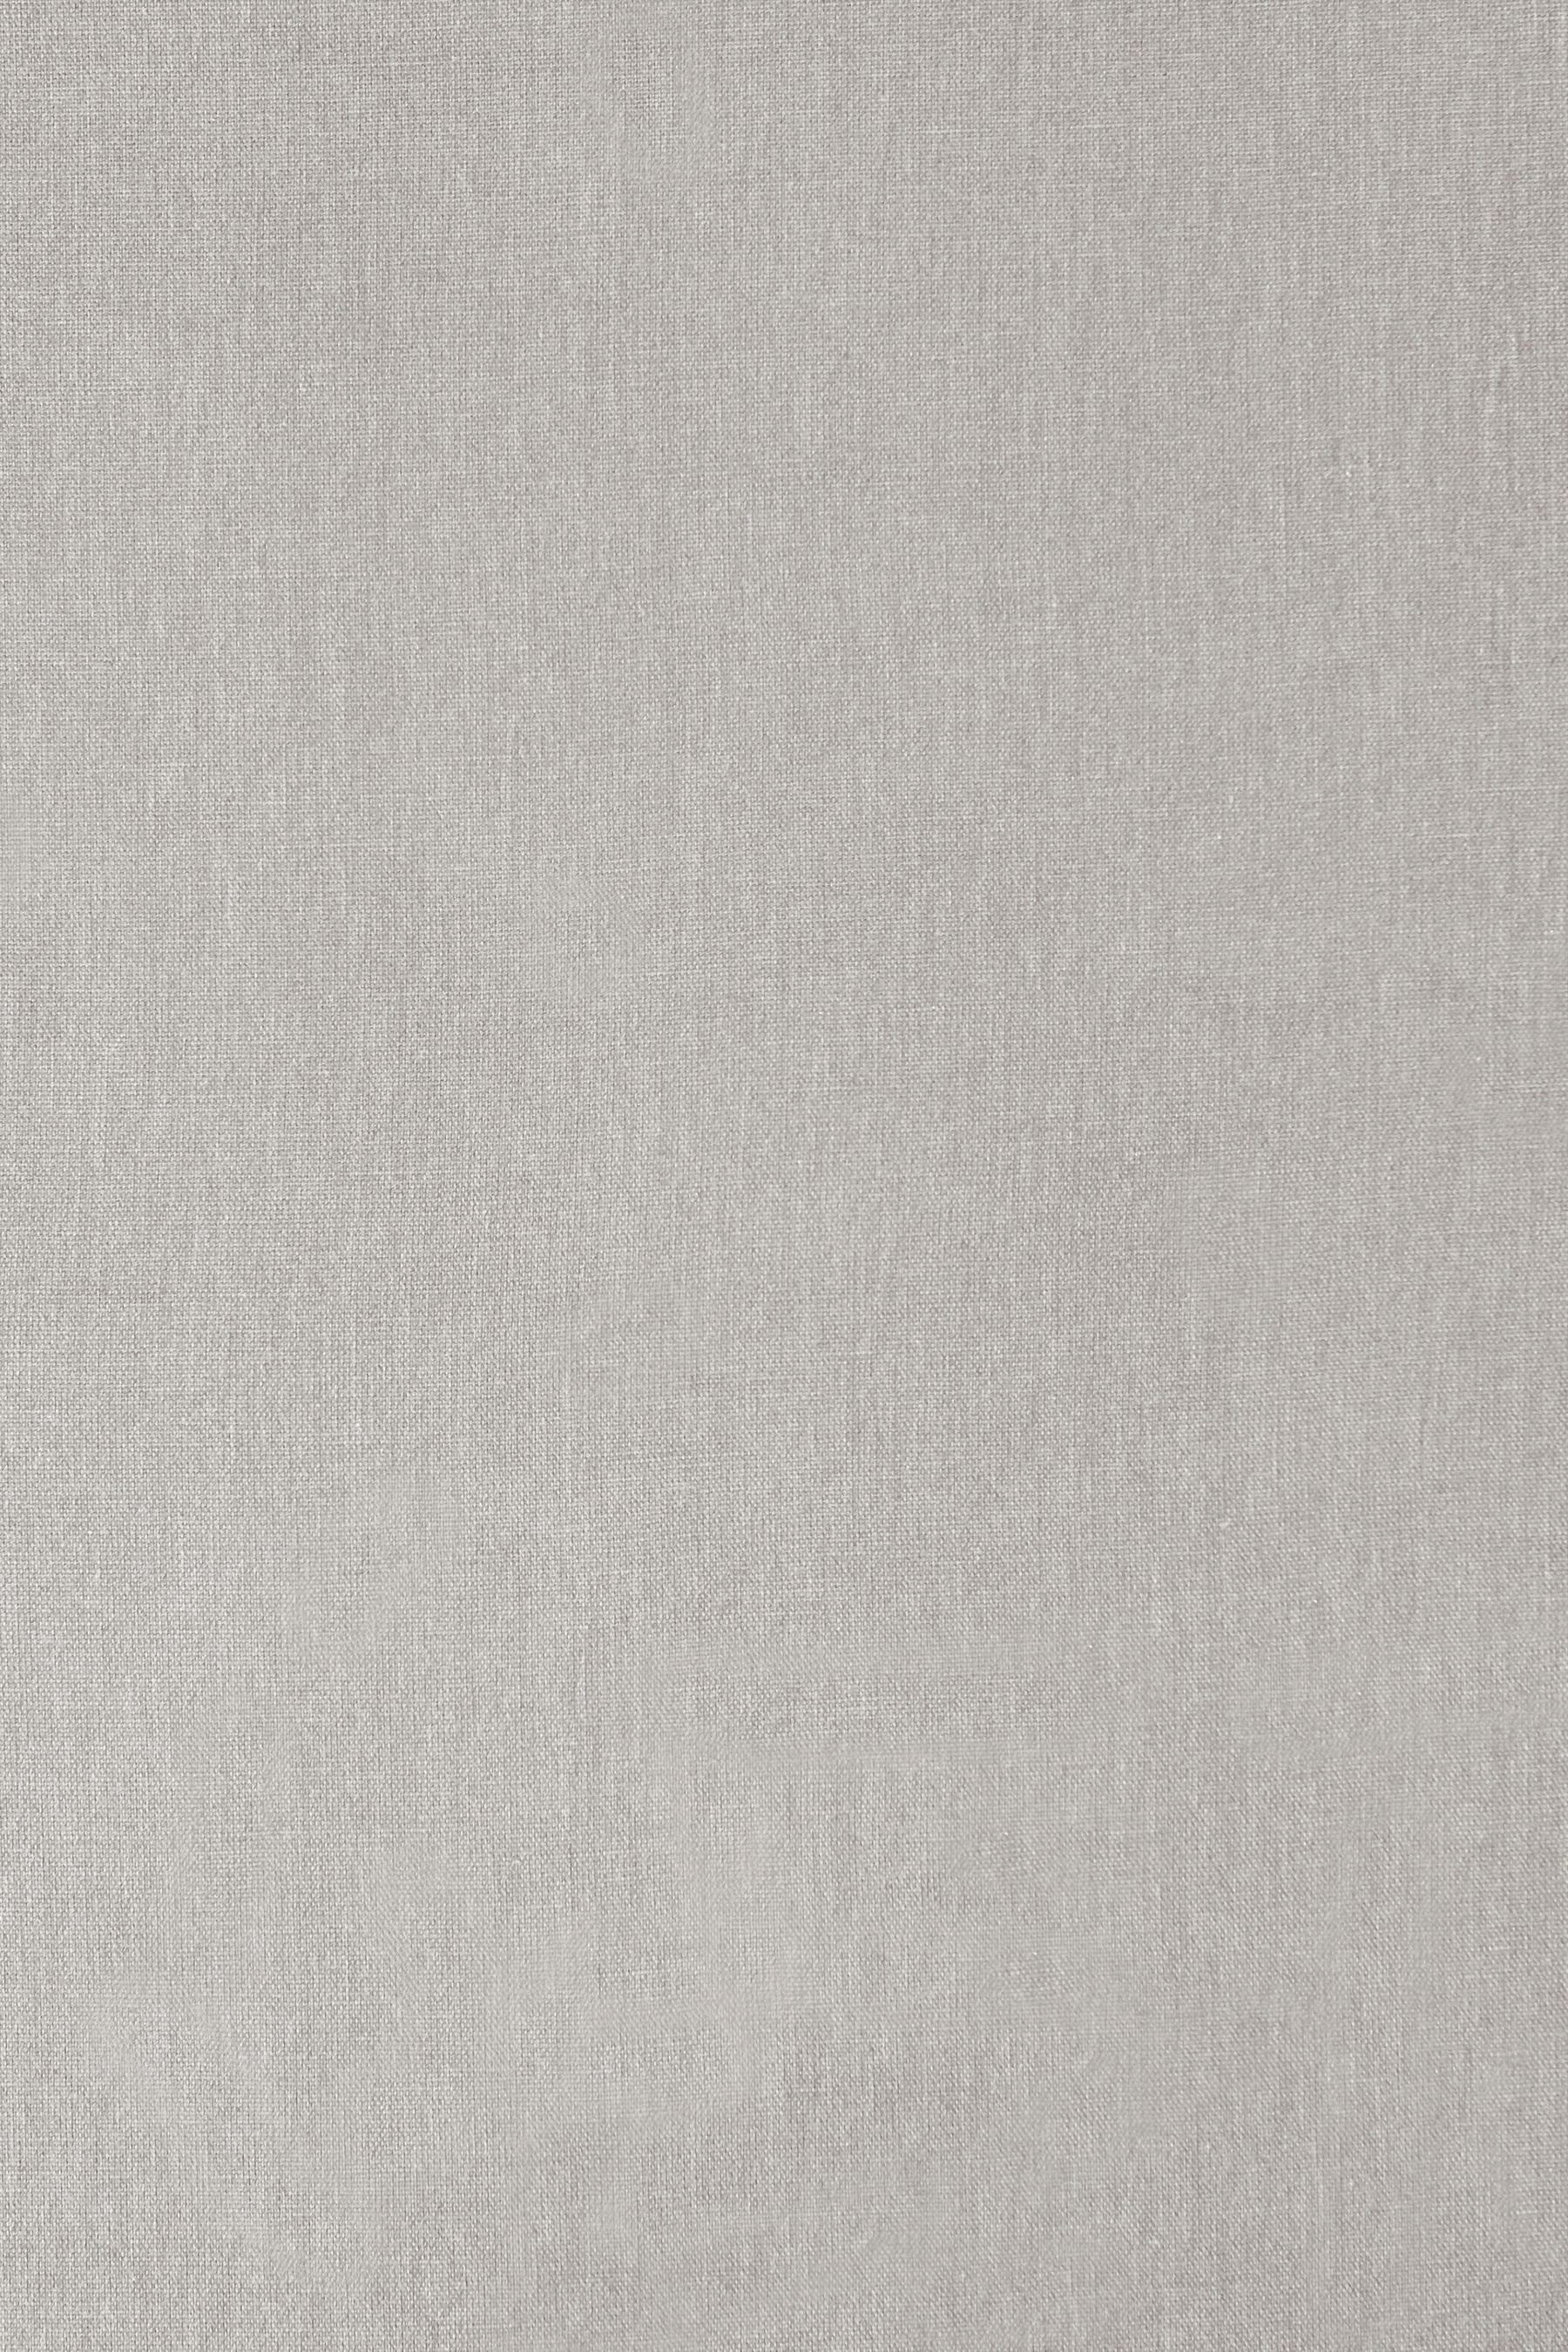 Grey (3 Vorhang Next, Baumwollvorhänge, Silver St)